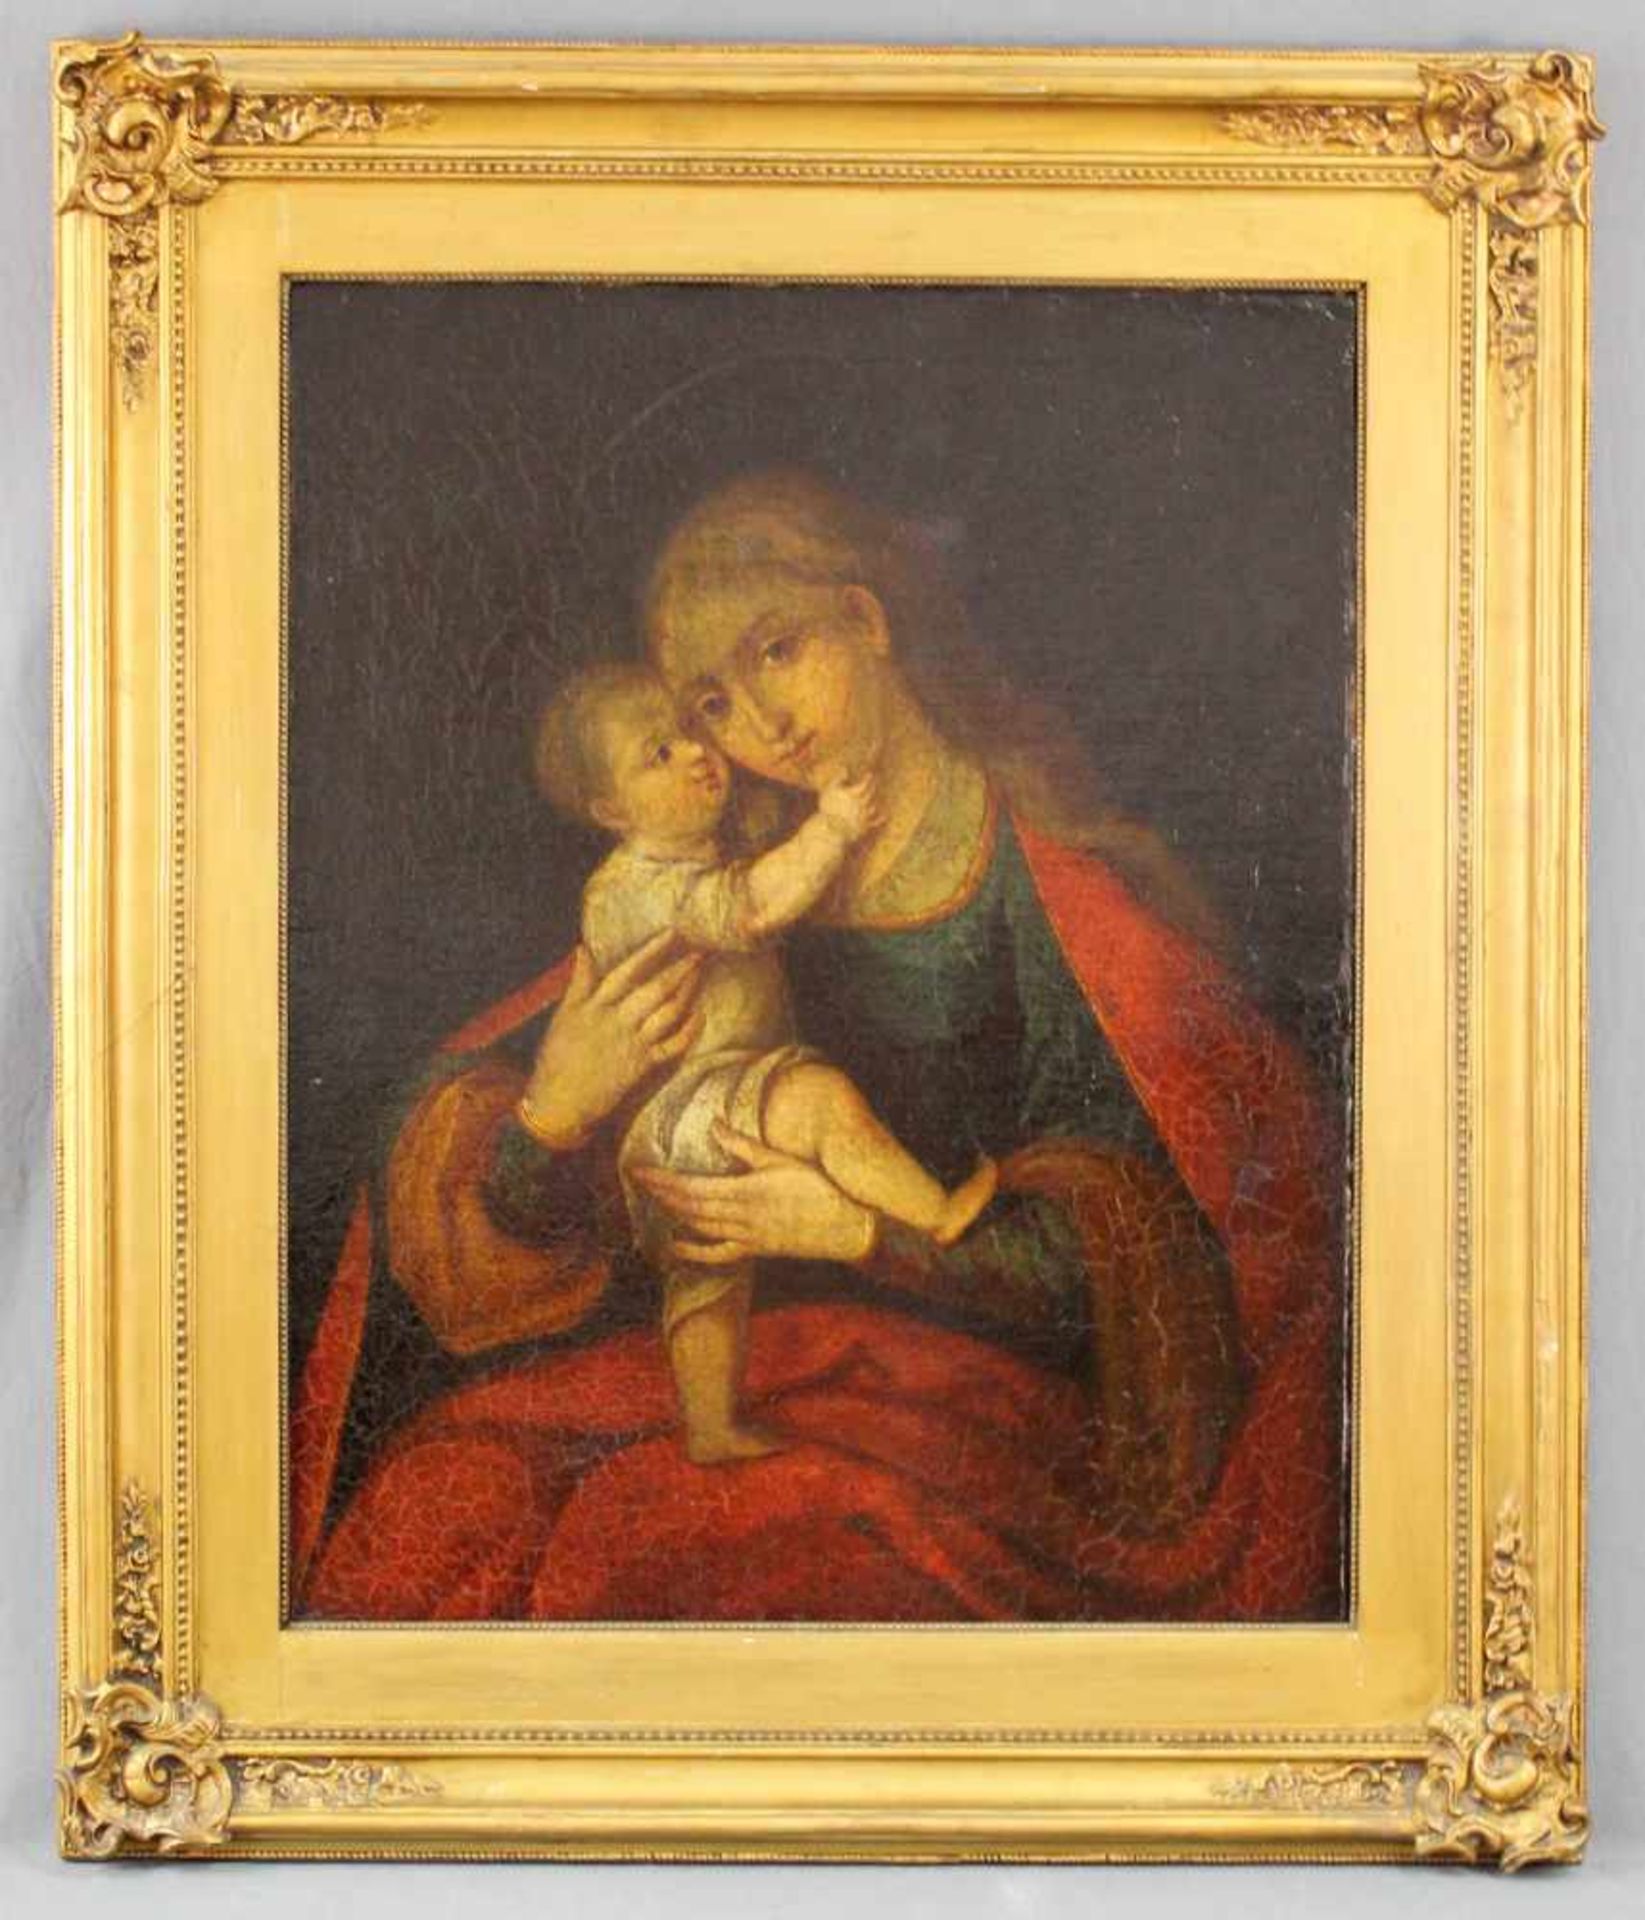 UNSIGNIERT (XVIII). Maria mit Jesus.66 cm x 54 cm. Öl auf Leinwand, u. a. doubliert. Keine - Bild 2 aus 7